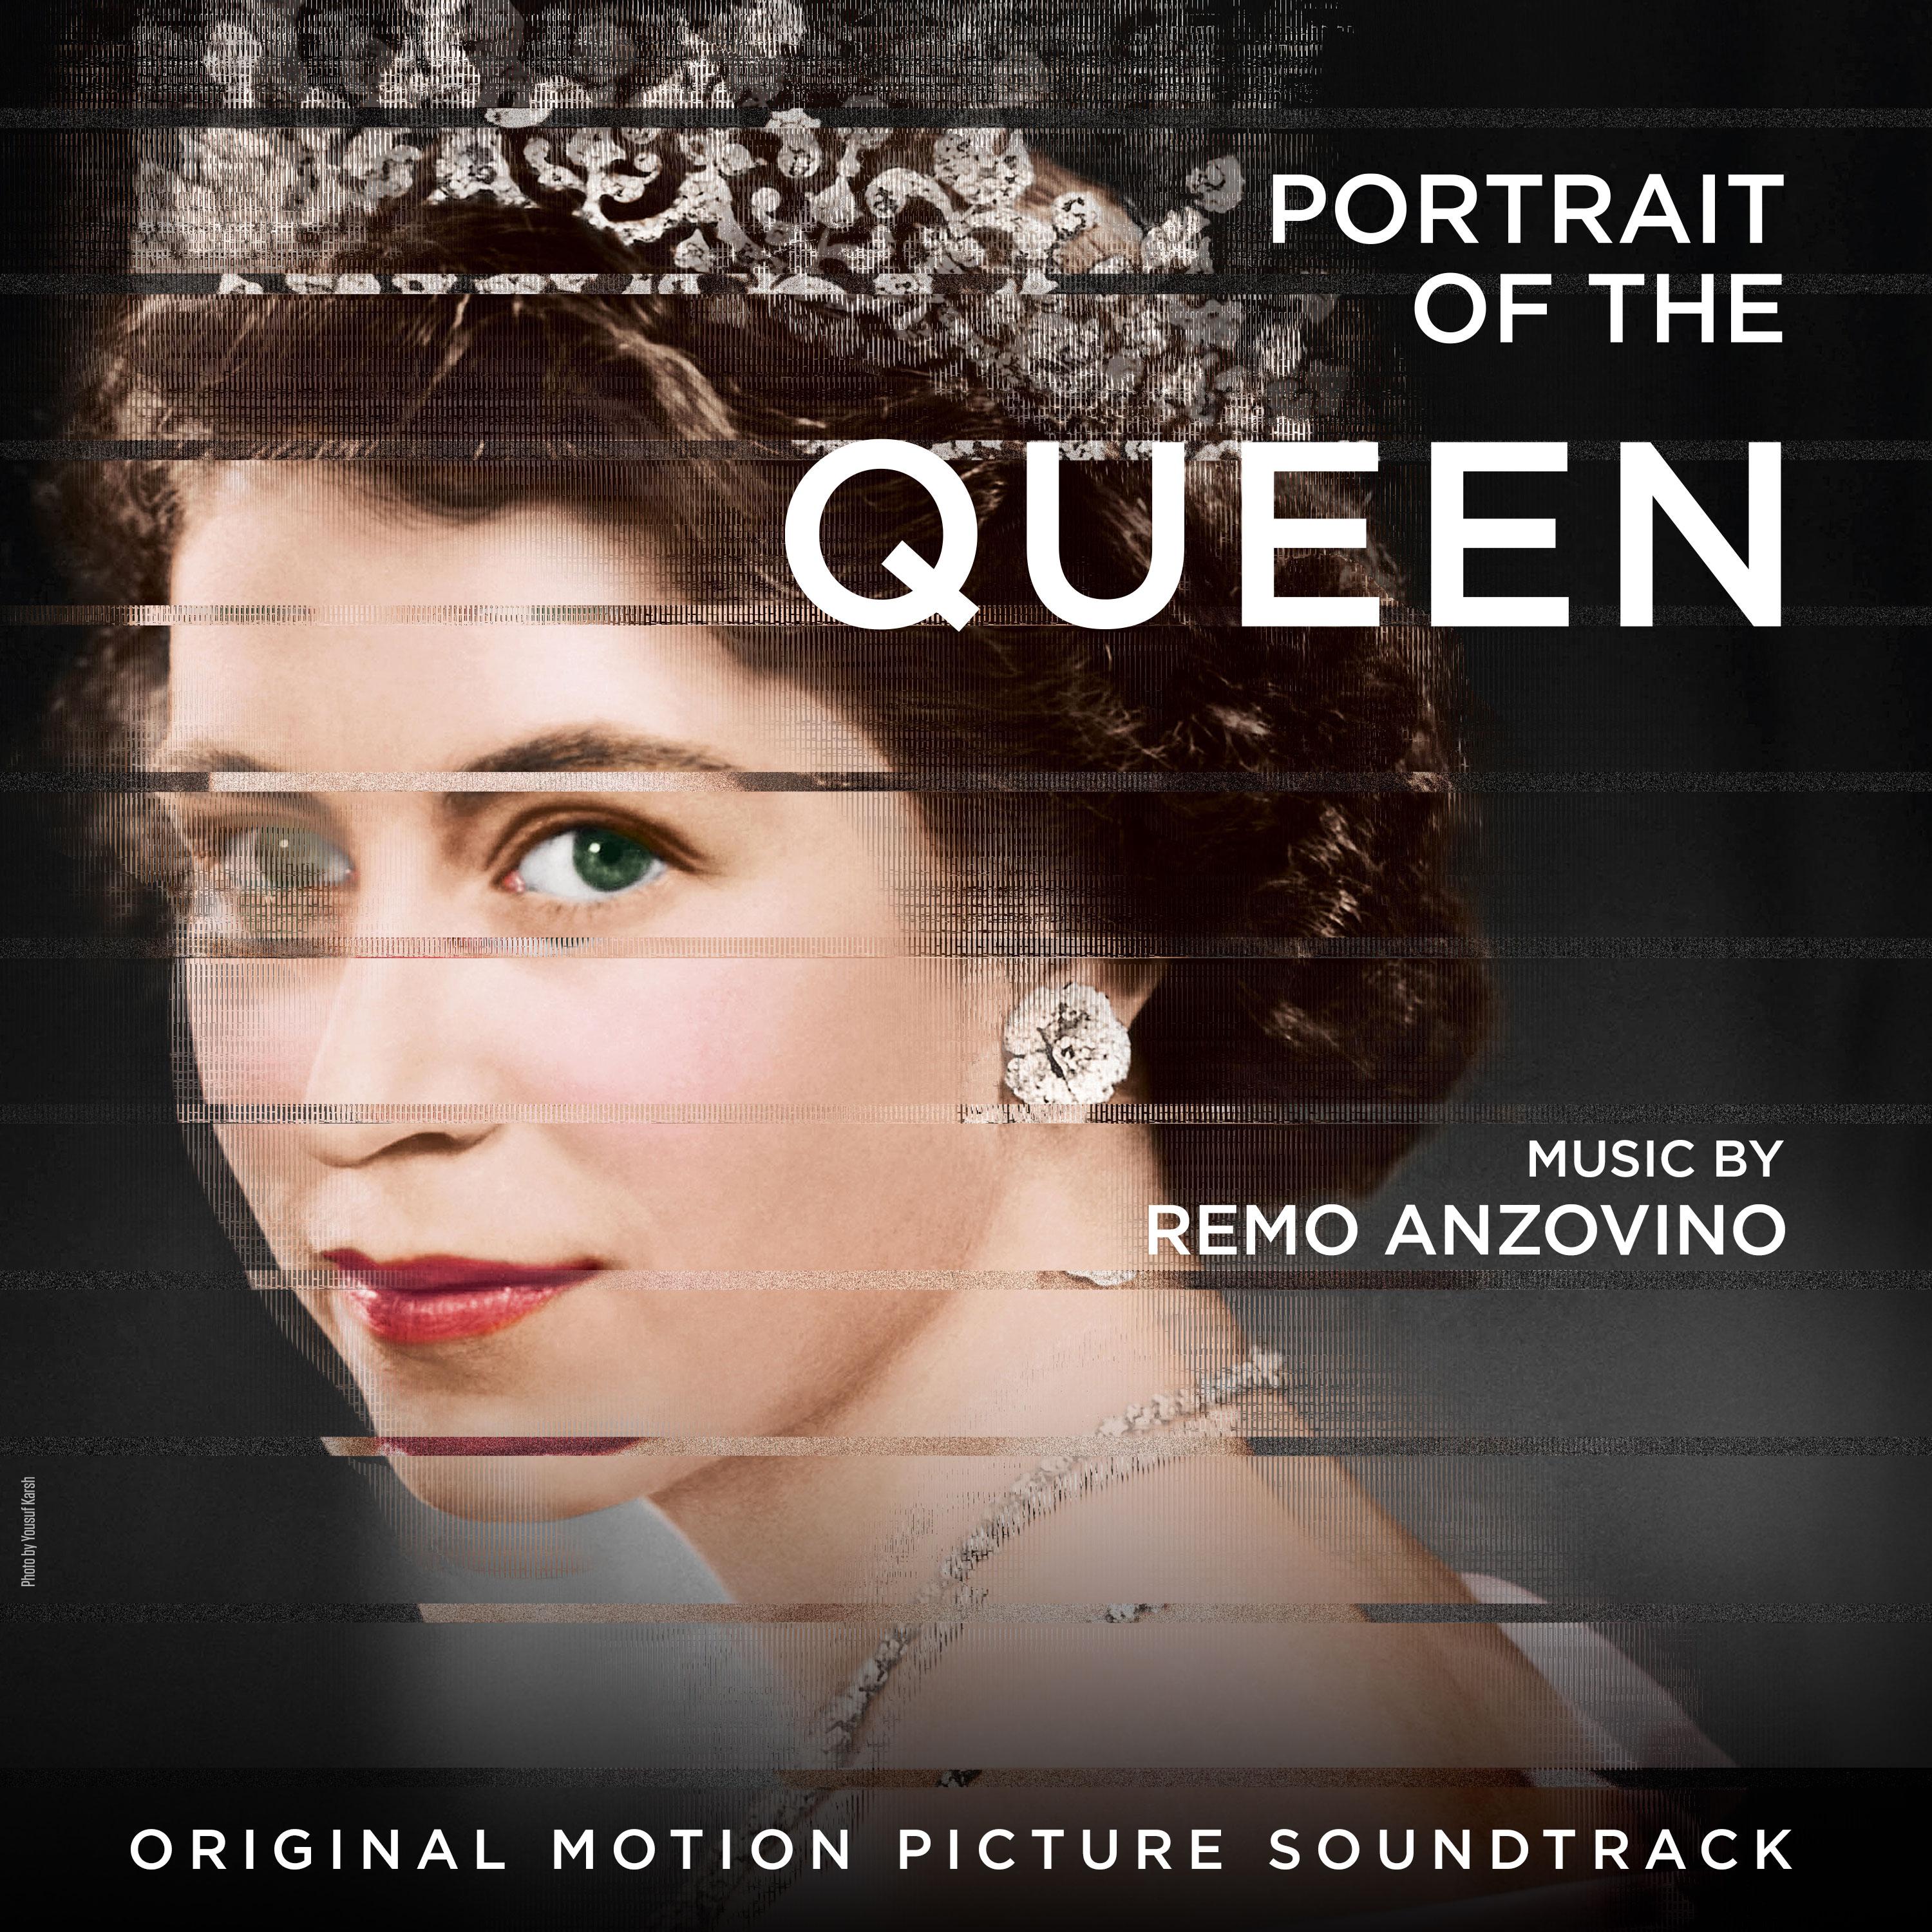 Remo Anzovino - Portrait of the Queen (Original Motion Picture Soundtrack)